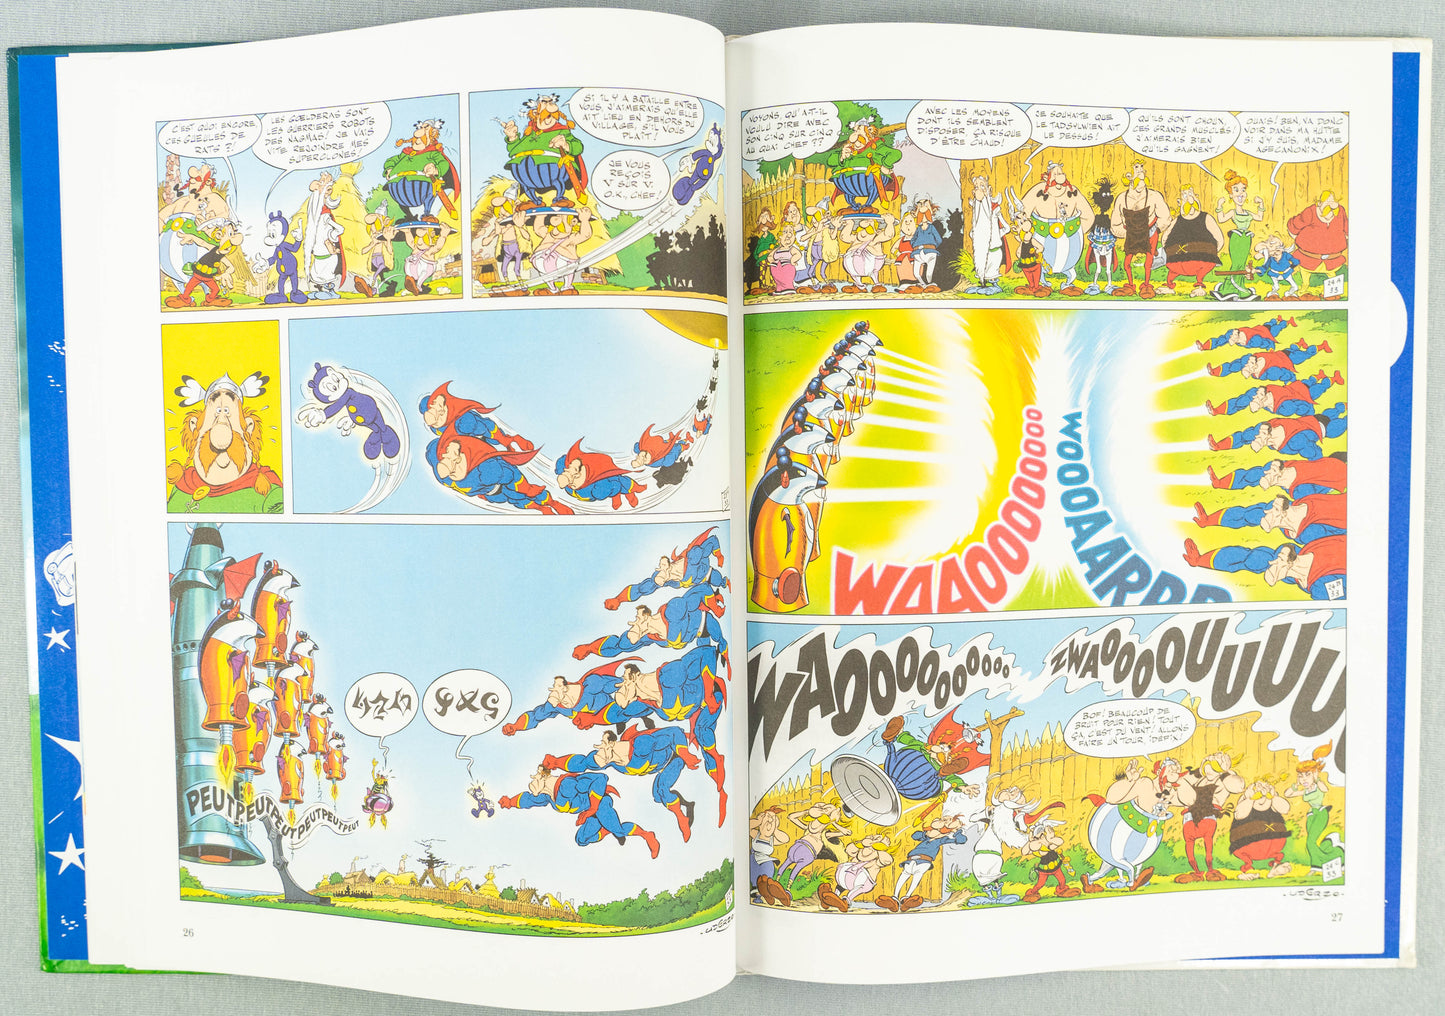 Asterix Le Ciel Lui Tombe Sur La Tete: Editions Rene 2005 1st Belgian Rare HB EO